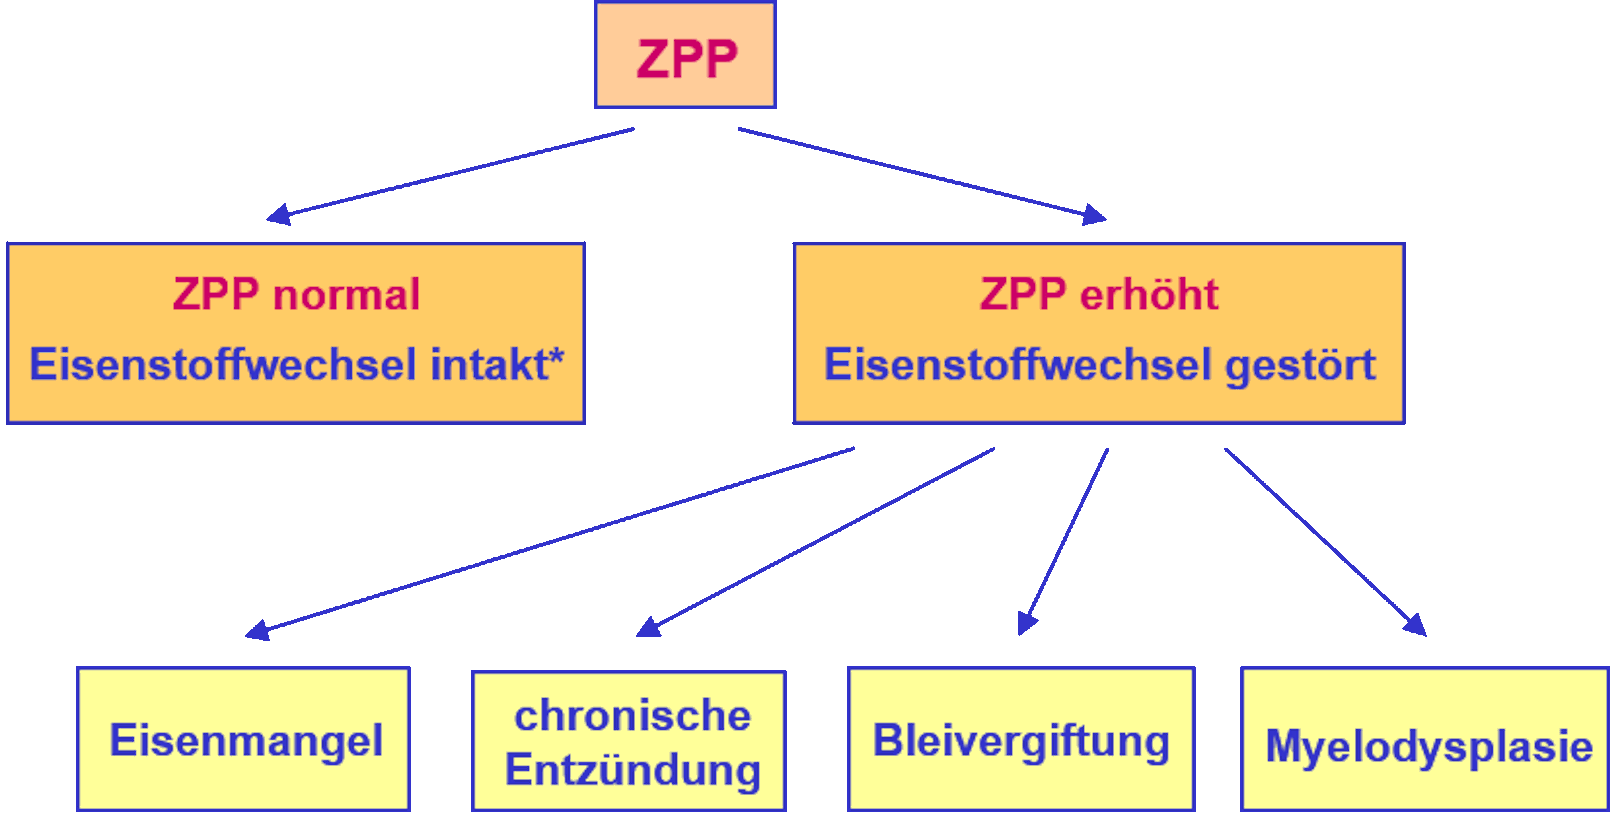 ZPP als Screeningparameter des Eisenstoffwechsels